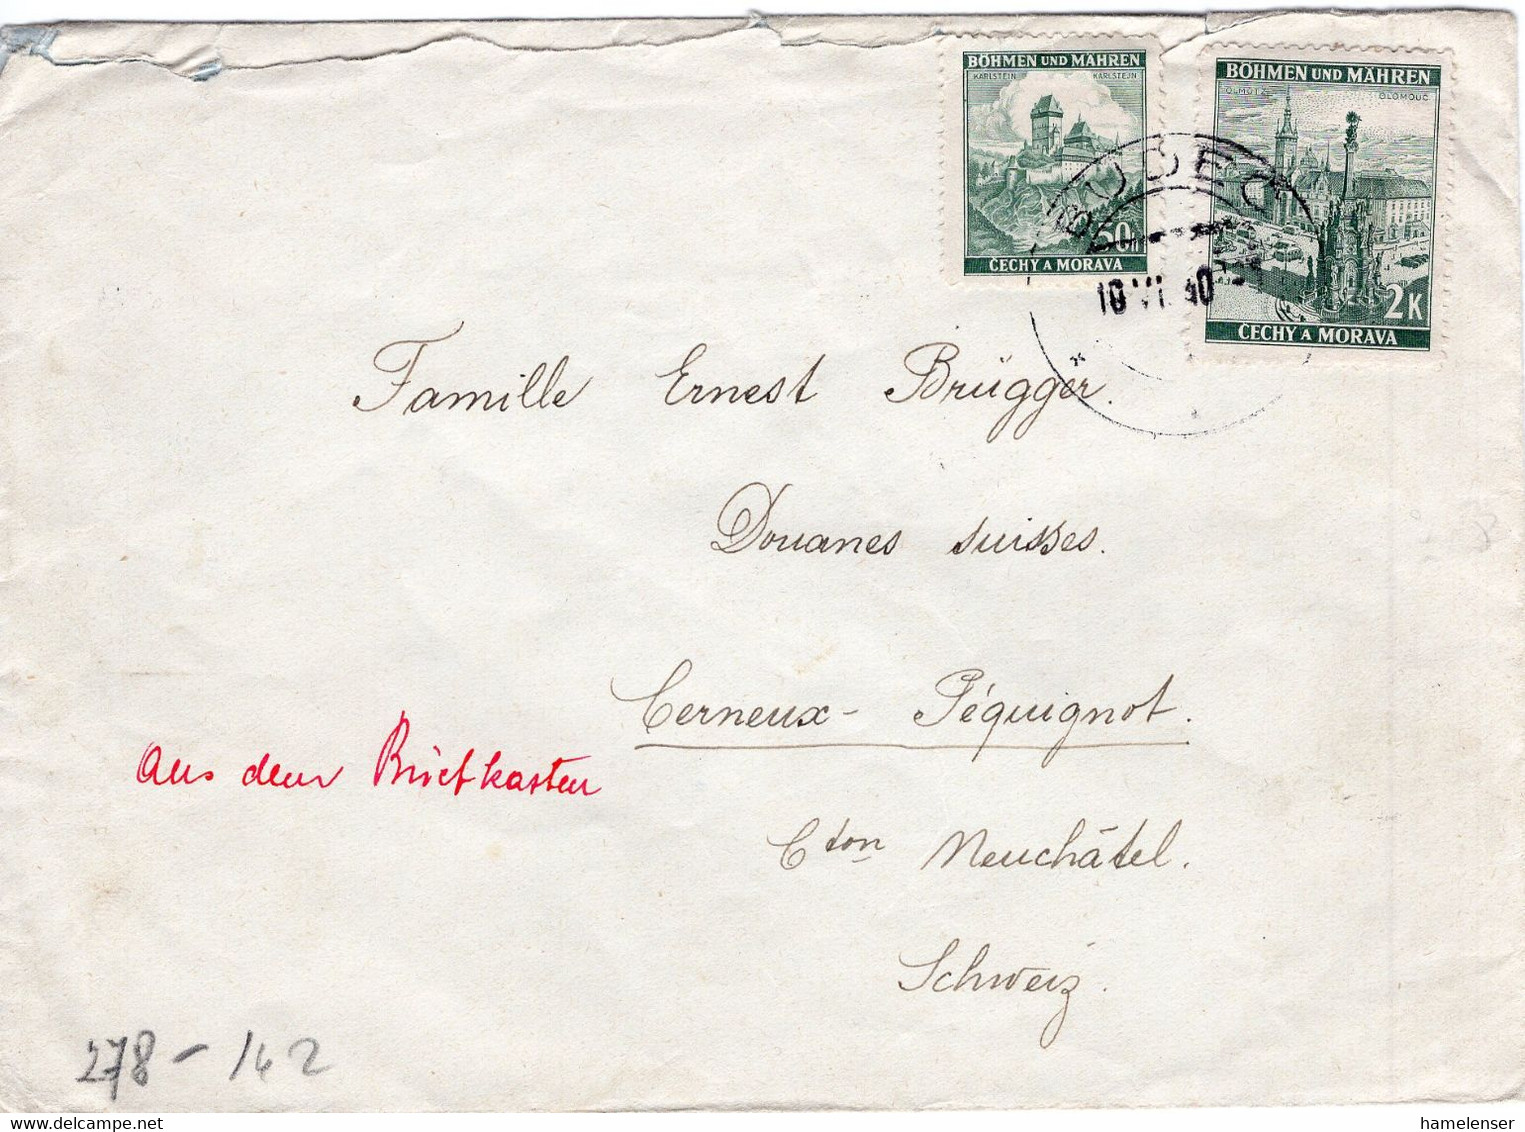 49674 - Deutsches Reich / B&M - 1940 - 2K MiF A. Bf. V. BUDEC I.d. Schweiz, M. Dt. Zensur & Hs. "Aus Dem Briefkasten" - Lettres & Documents